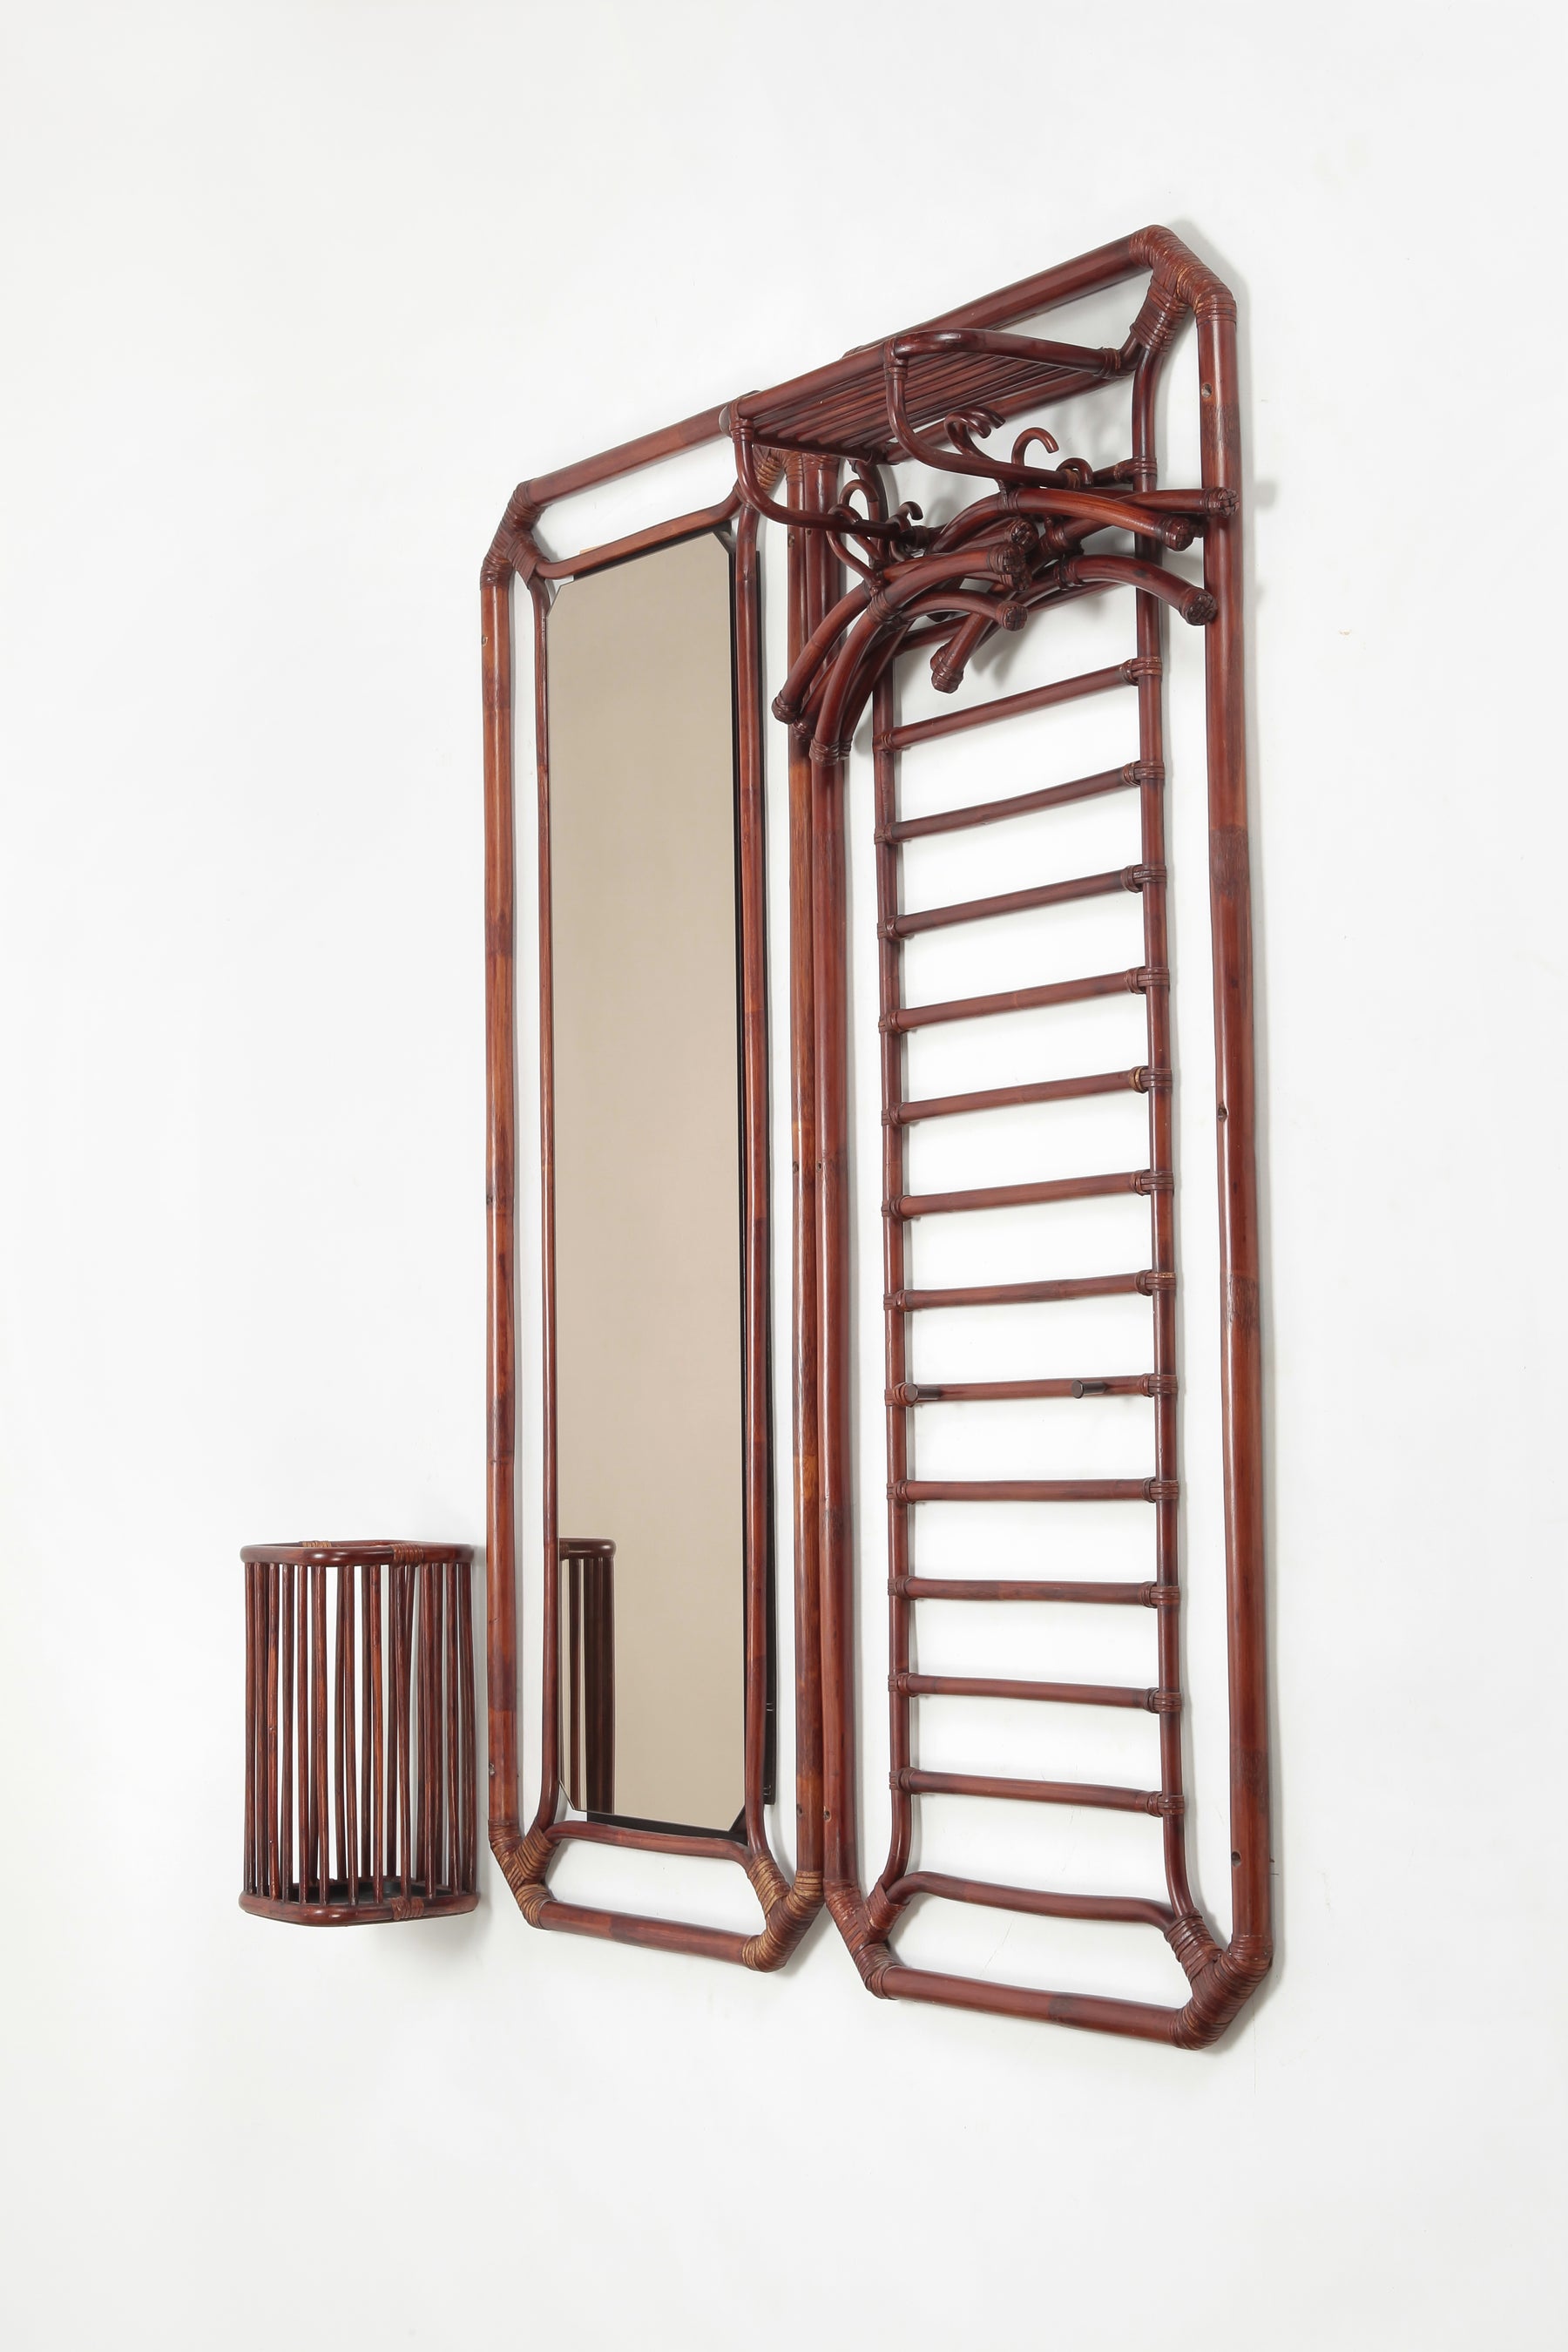 Ensemble-garderobe-spiegel-schirm-ständer-bambus-rattan-70er-apari